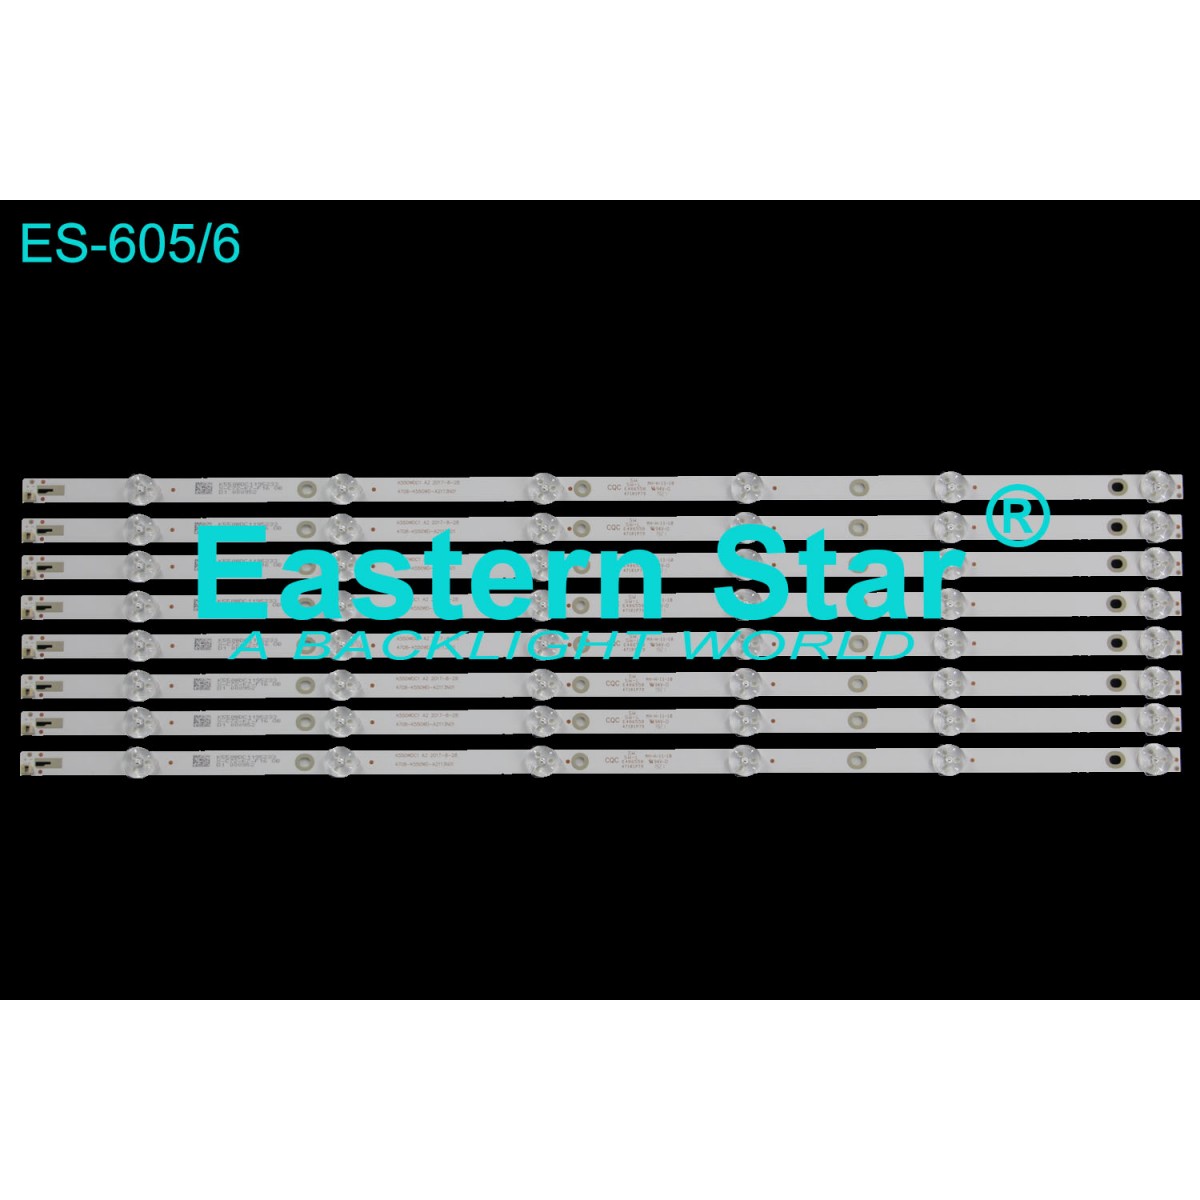 ES-605, K550WDC1 A2, 2017-8-28, 4708-K550WD-A2113N01, 6 LEDLİ, K550WDC2, AWOX, U5600STR, TV LED BAR